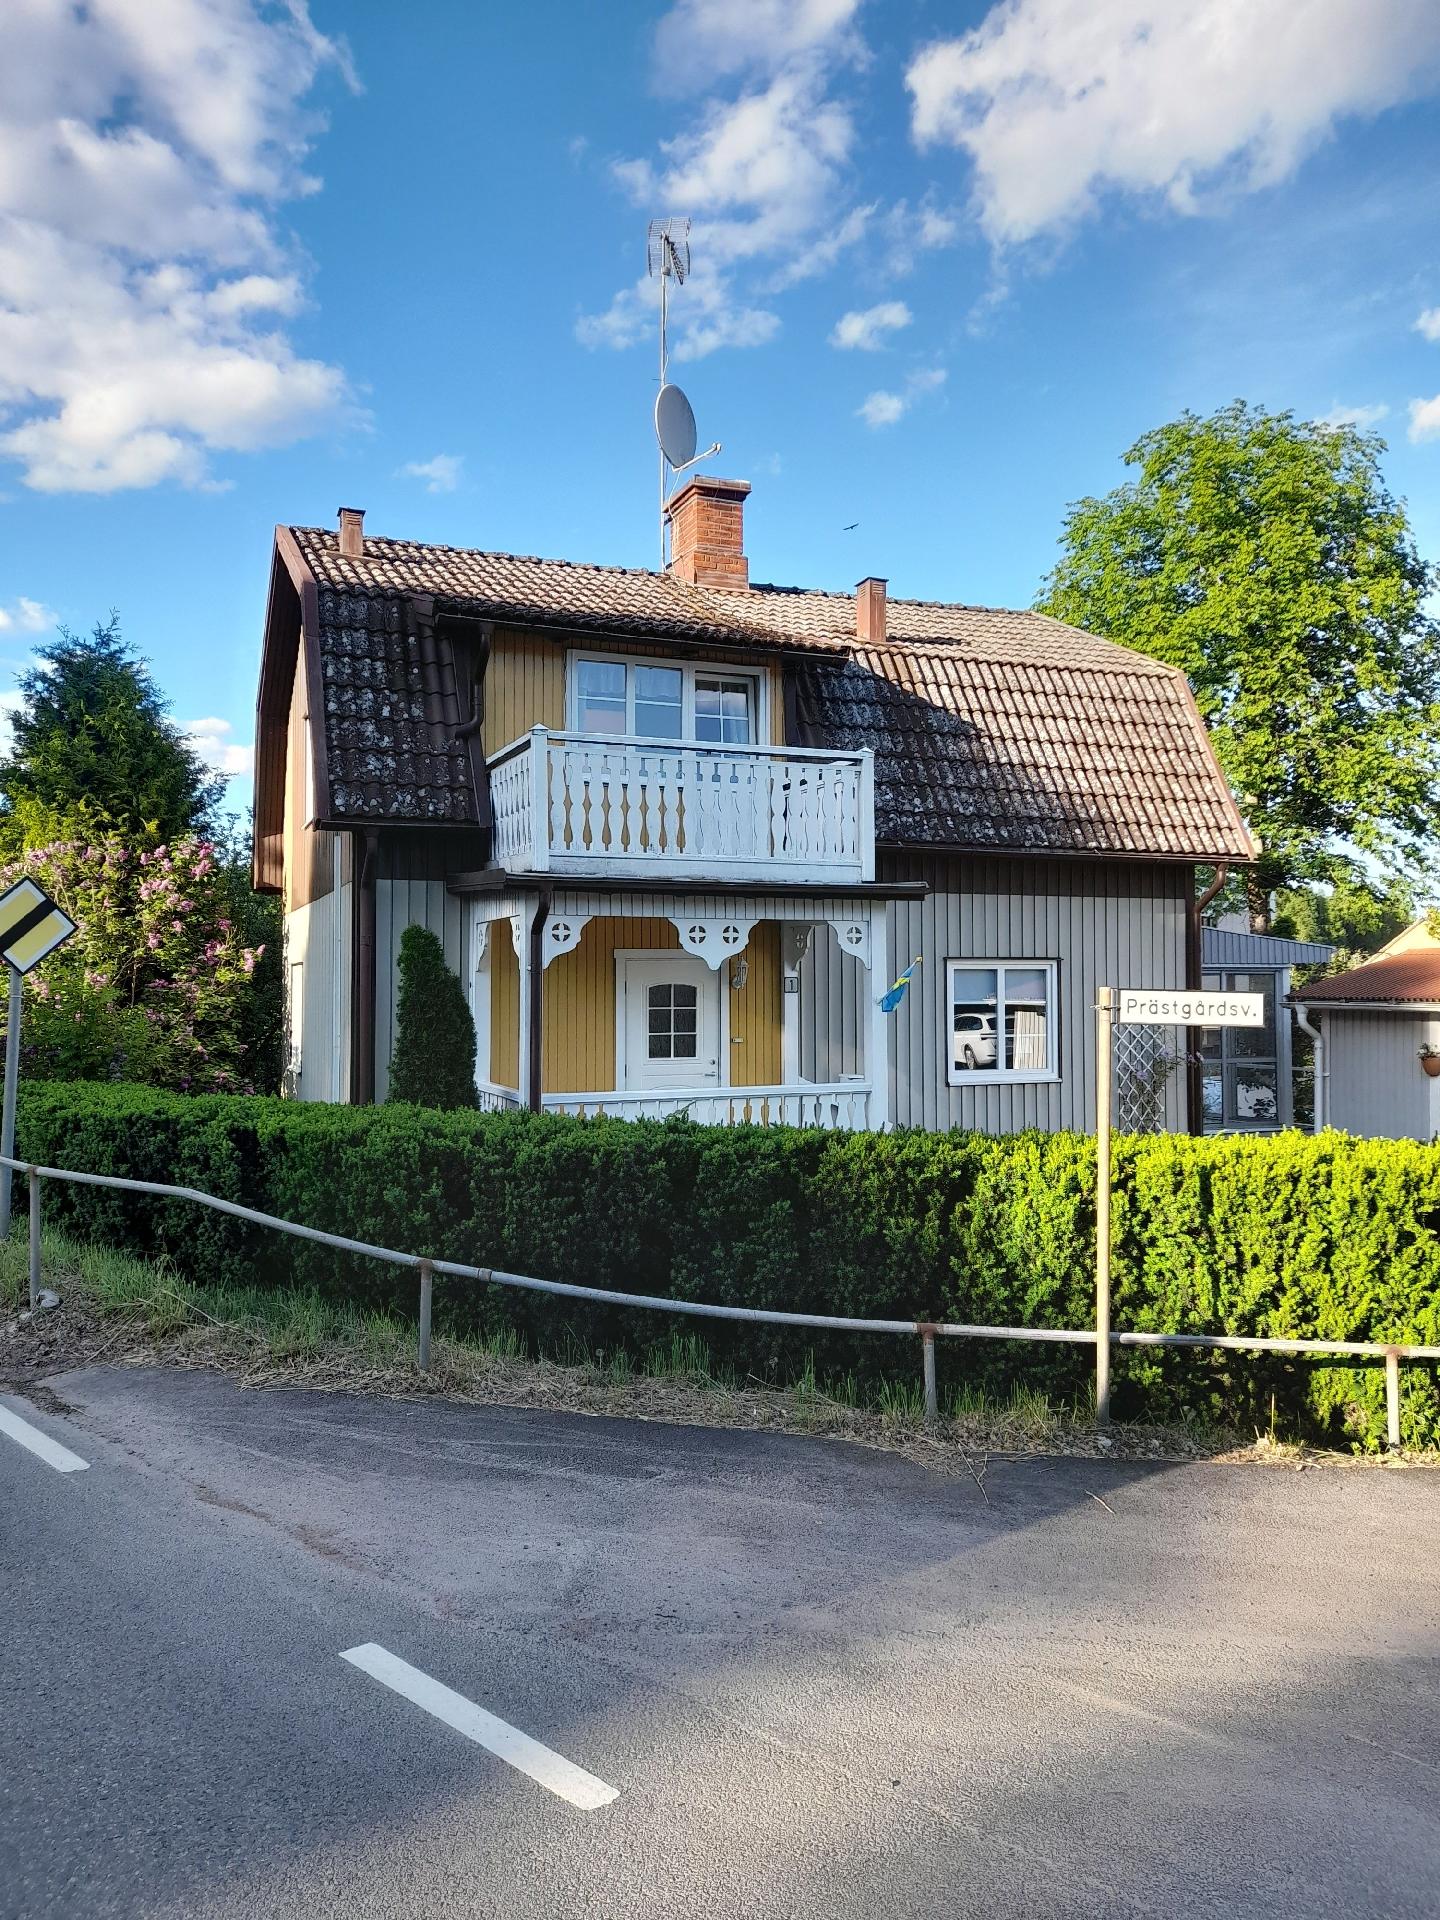 Typisch schwedisches Ferienhaus mit Garten Ferienhaus in Schweden